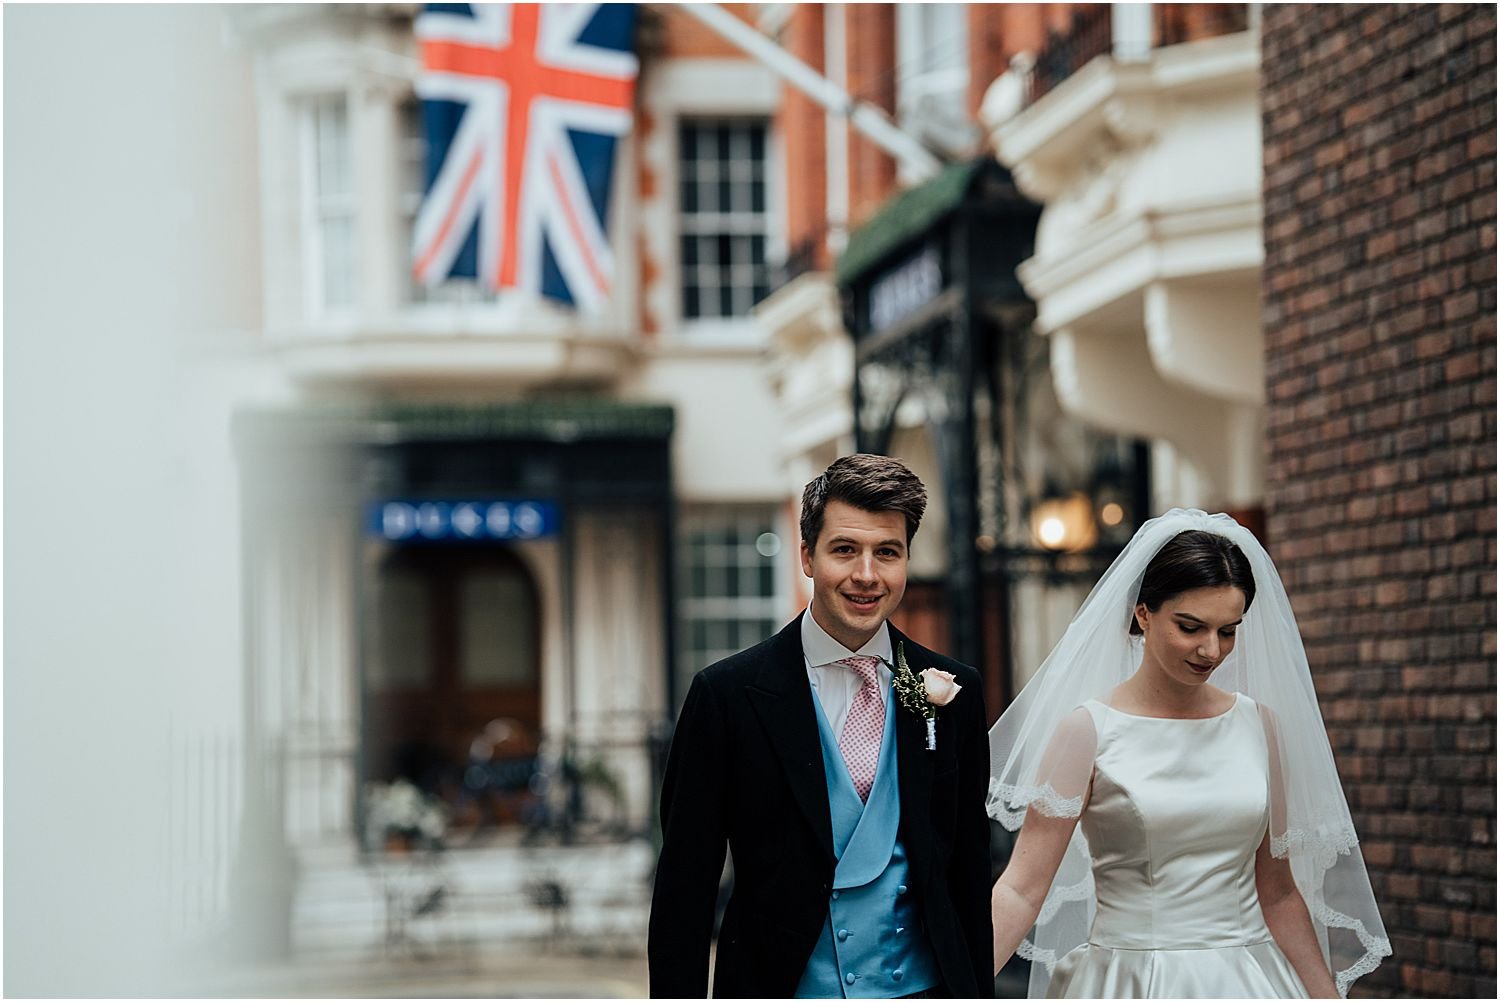 Bride and groom walking on streets in Mayfair